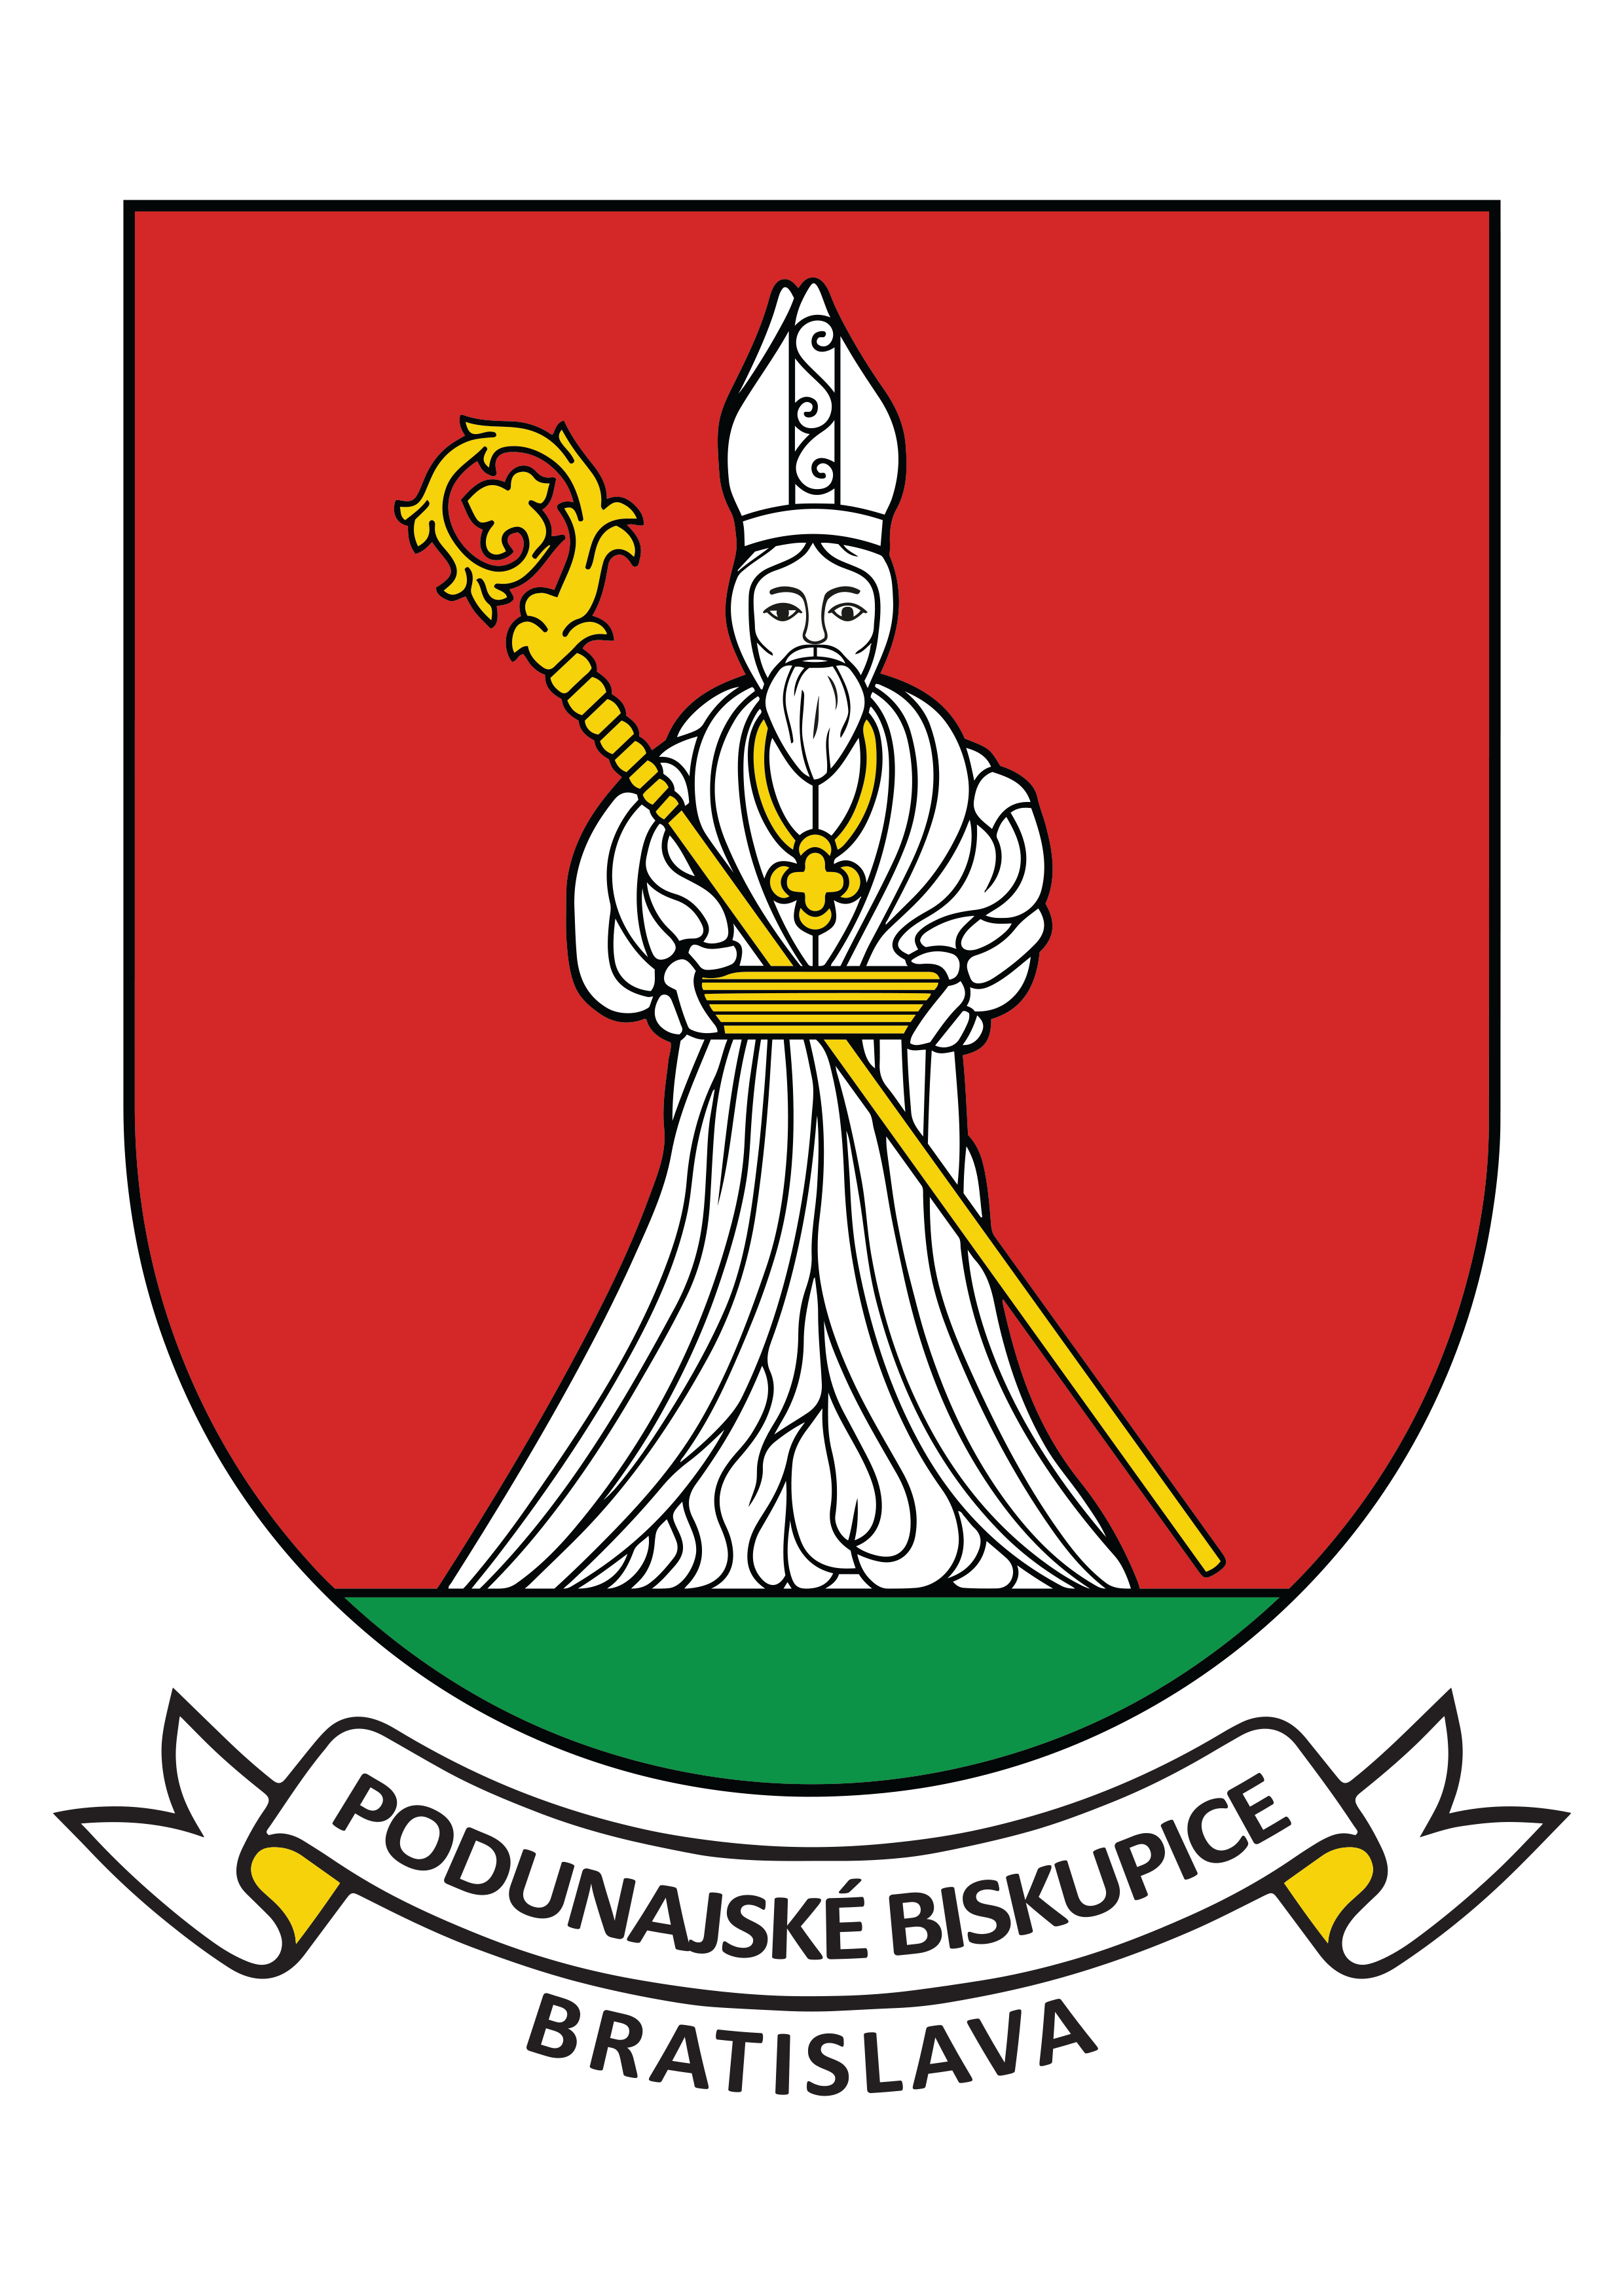 Podunajské Biskupice